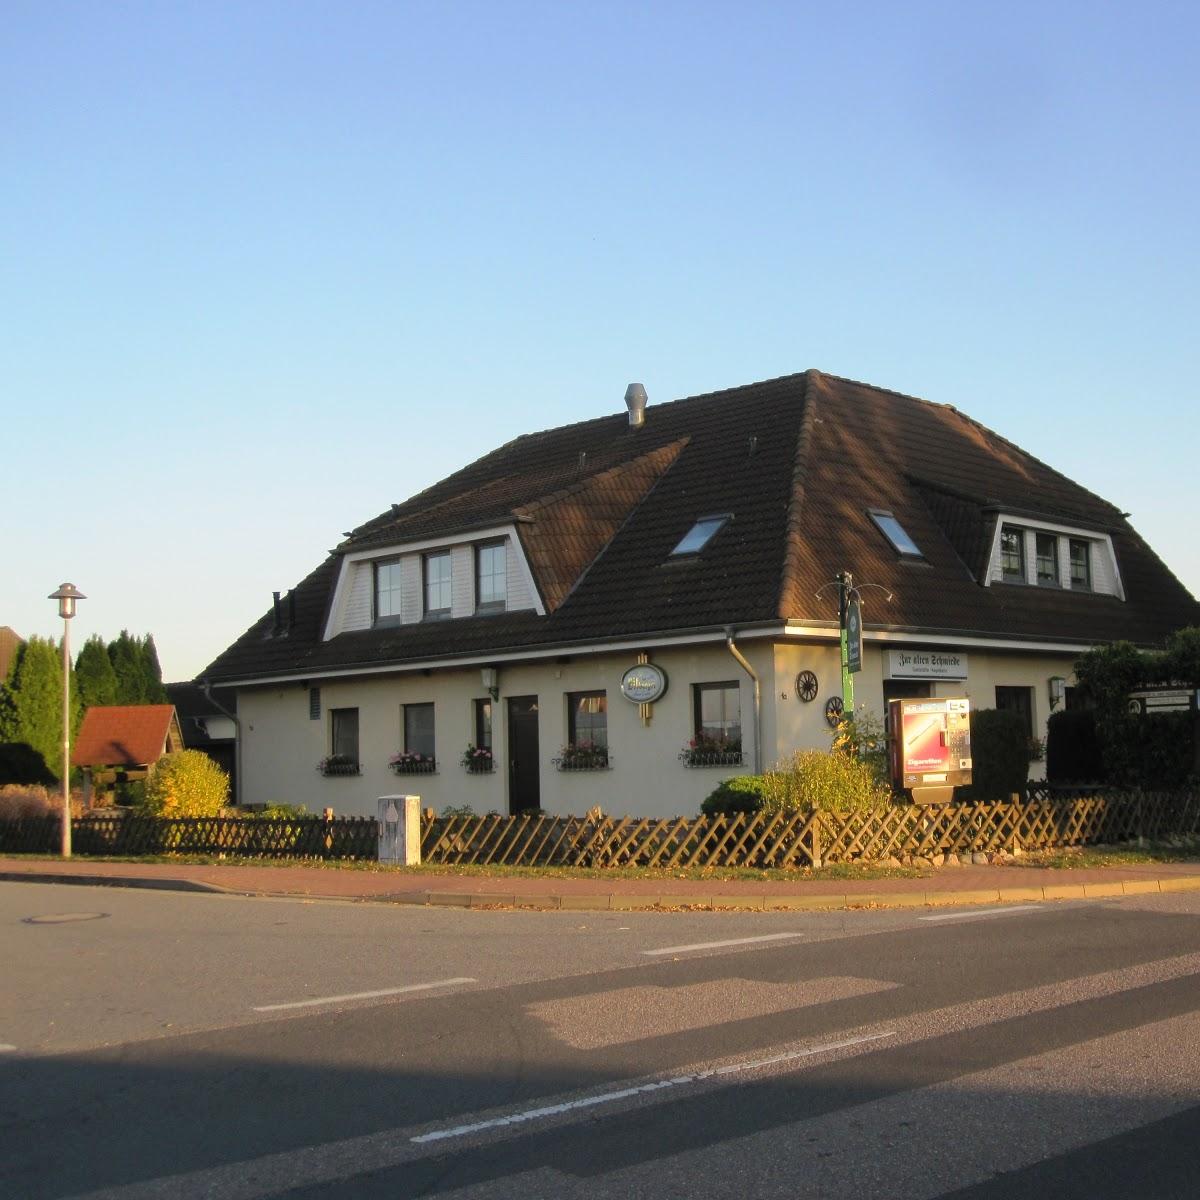 Restaurant "Zur Alten Schmiede" in  Woggersin